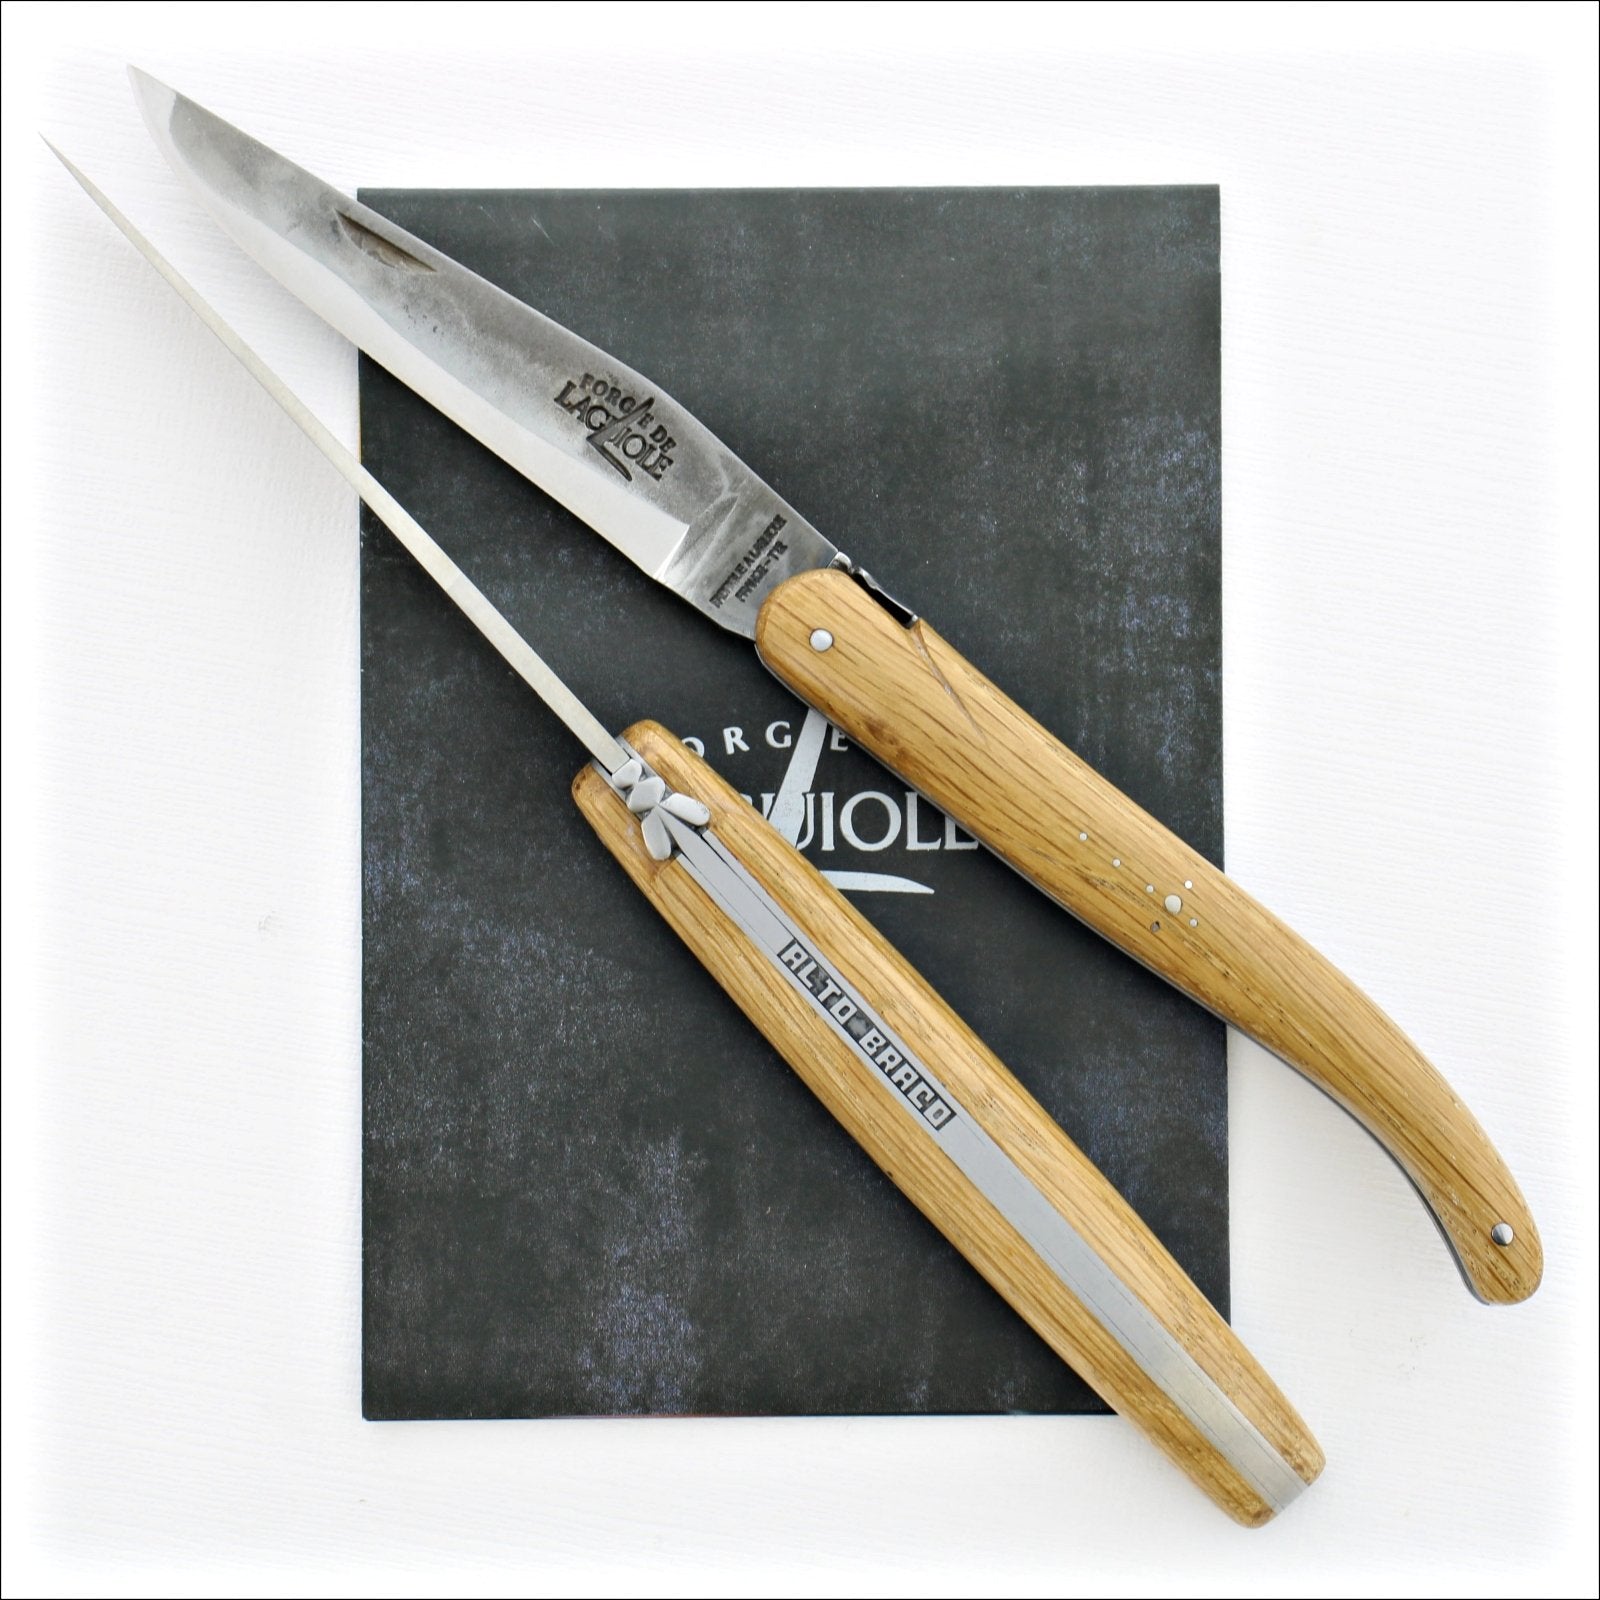 Alto Braco Full Handle 12 cm Pocket Knife Brut de Forge - Limited Edition